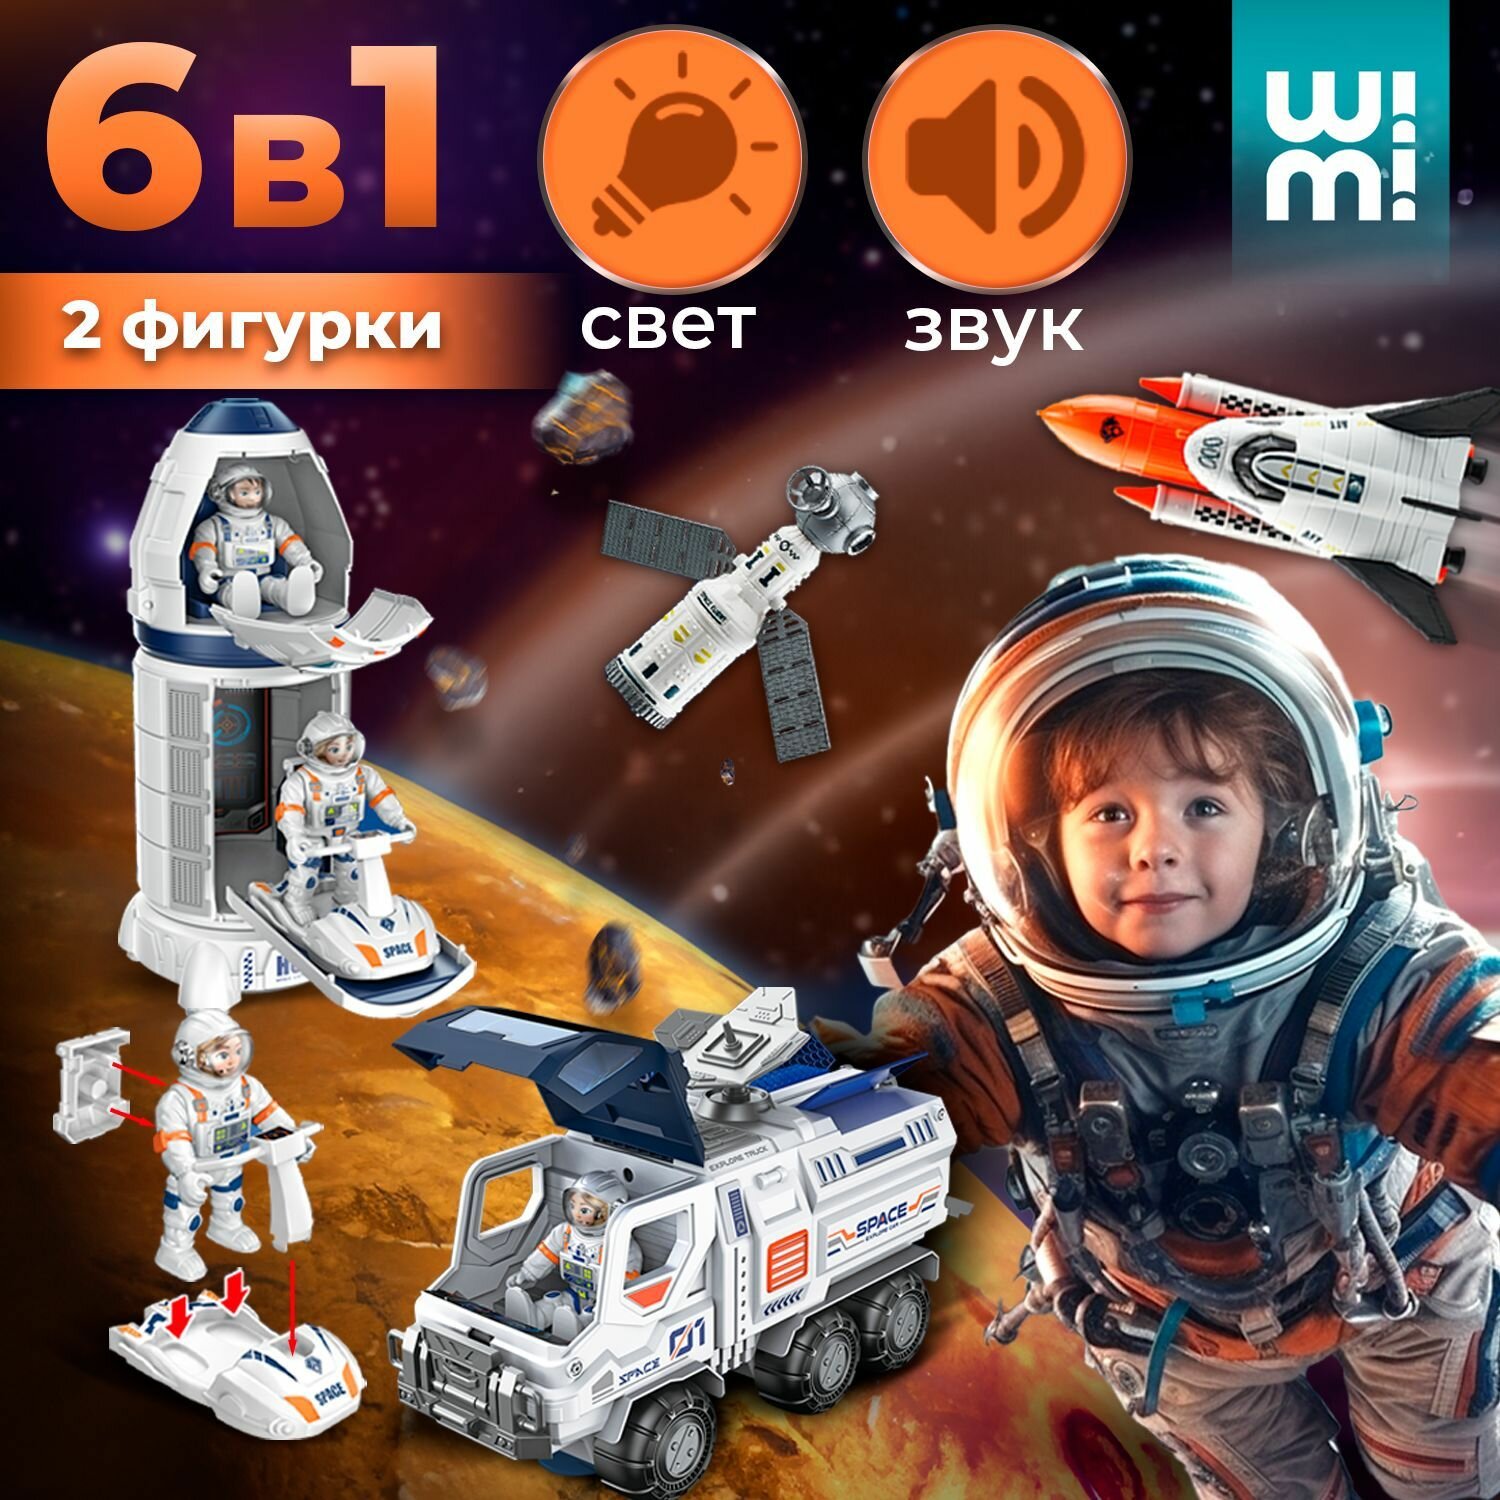 Интерактивный космический корабль WiMi со светозвуковыми эффектами, луноход и ракета игрушка, минифигурки космонавты с подвижными частями тела в комплекте